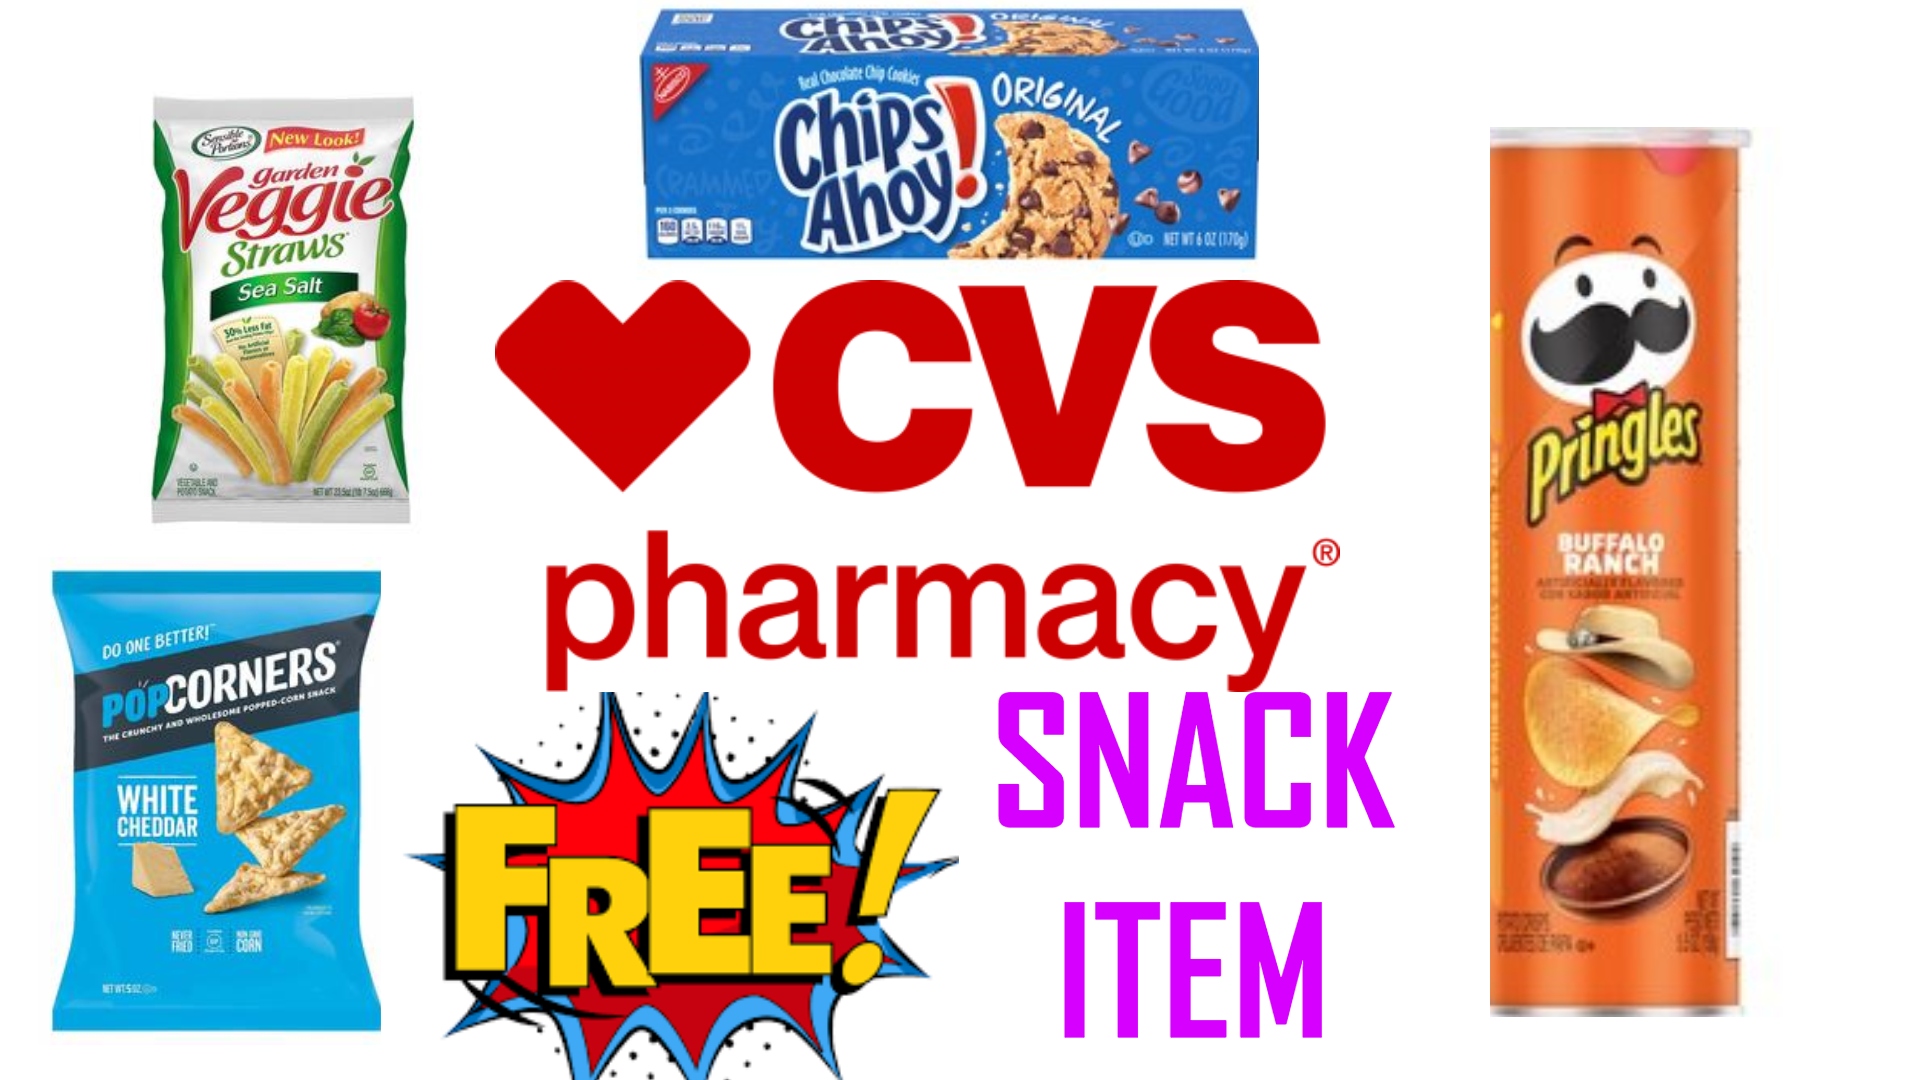 Free Snack Item at CVS ($3 Value)